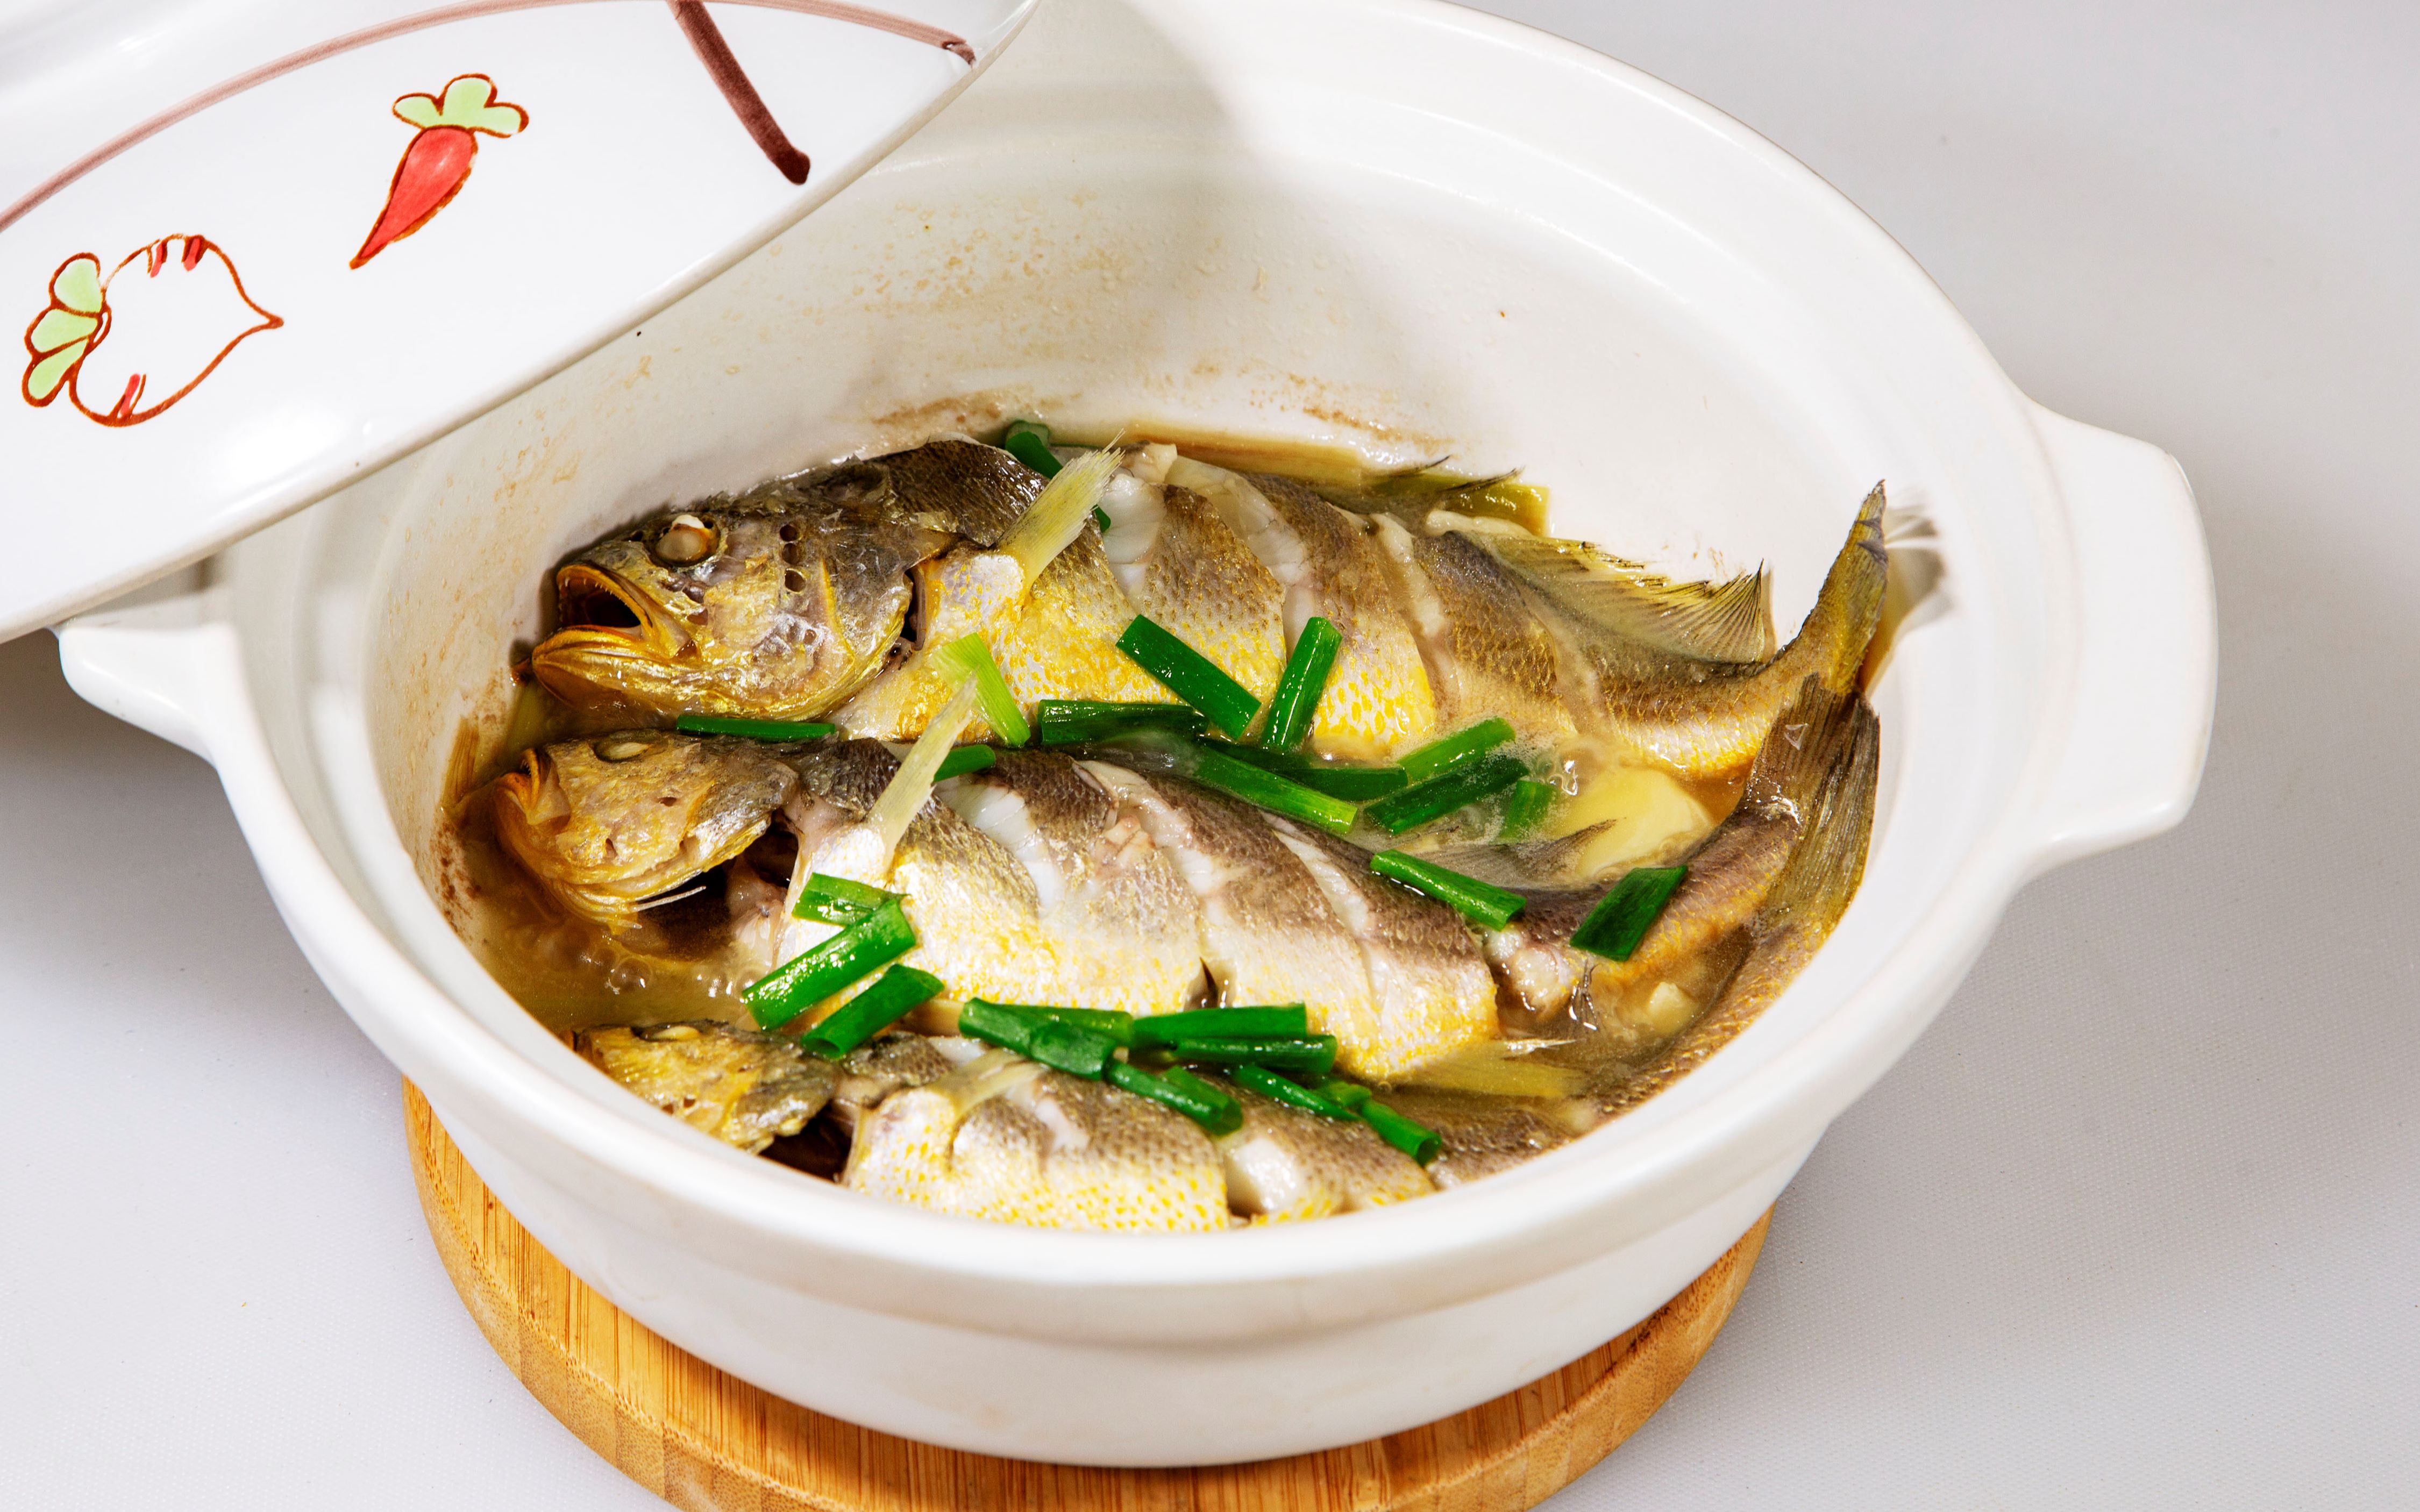 海鲜家常做法砂锅黄鱼简单配料砂锅直接焖出来的黄鱼肉质鲜美